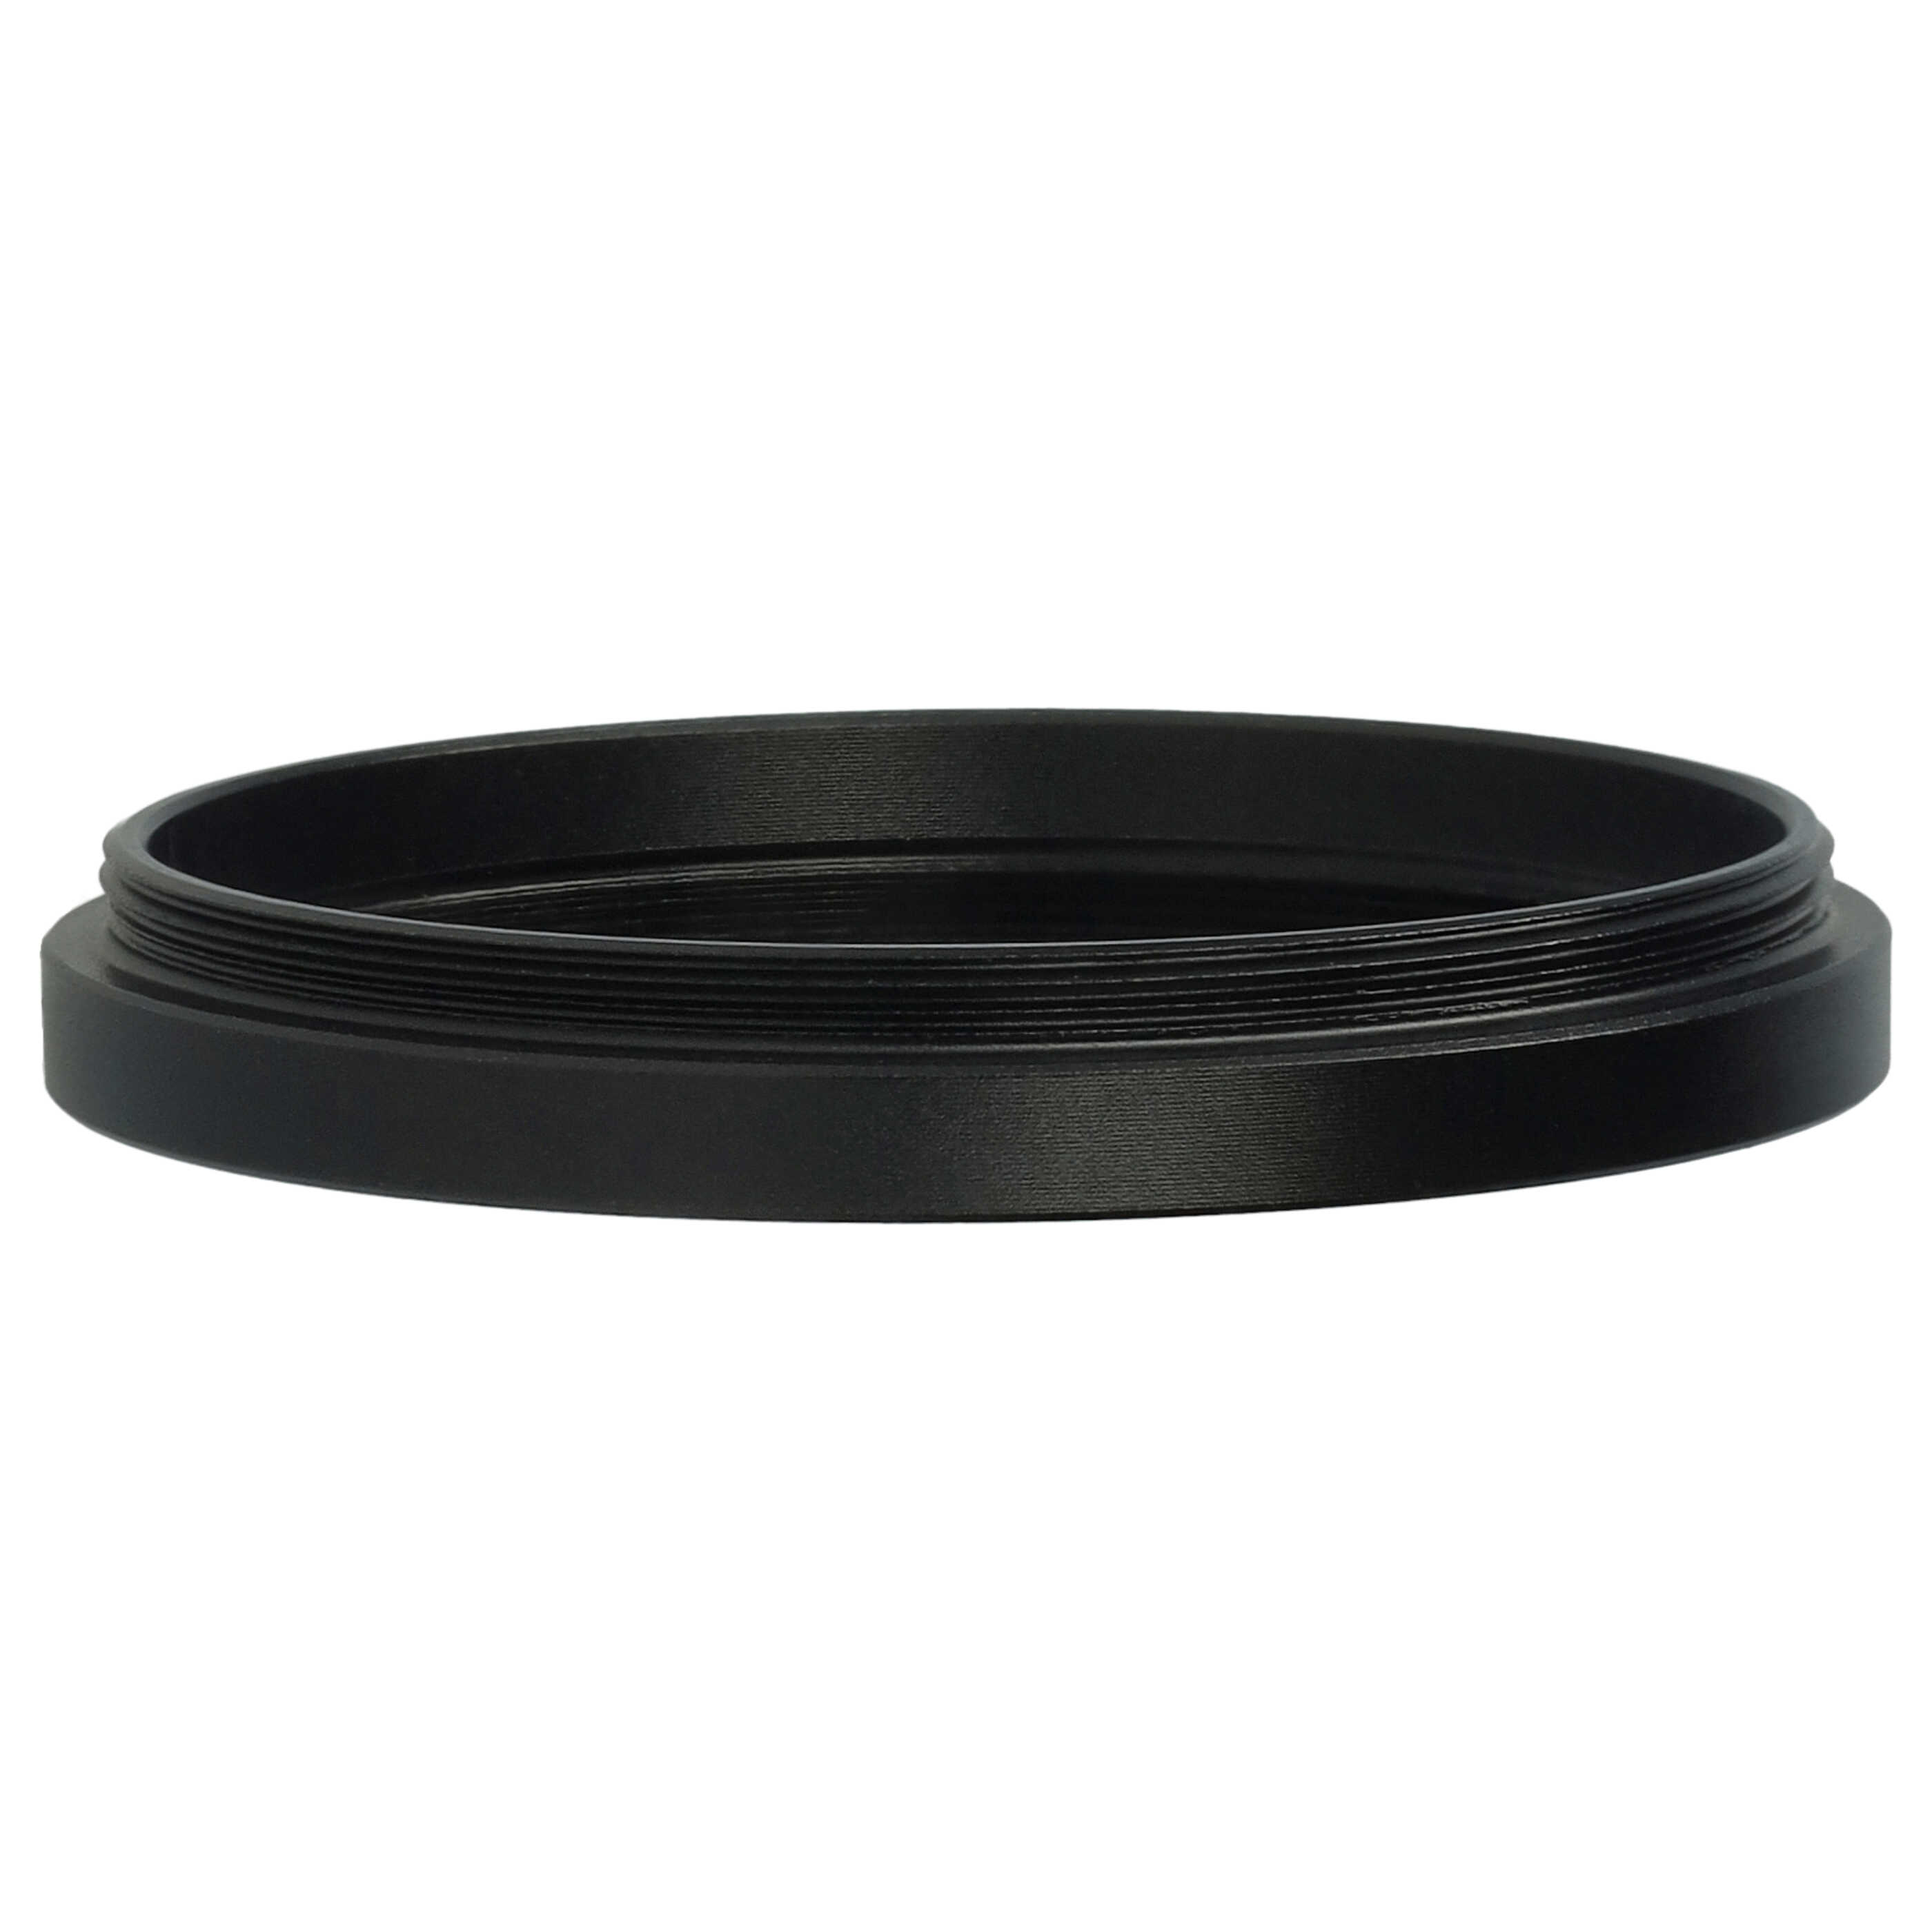 Anillo adaptador Step Down de 42 mm a 40,5 mm para objetivo de la cámara - Adaptador de filtro, metal, negro